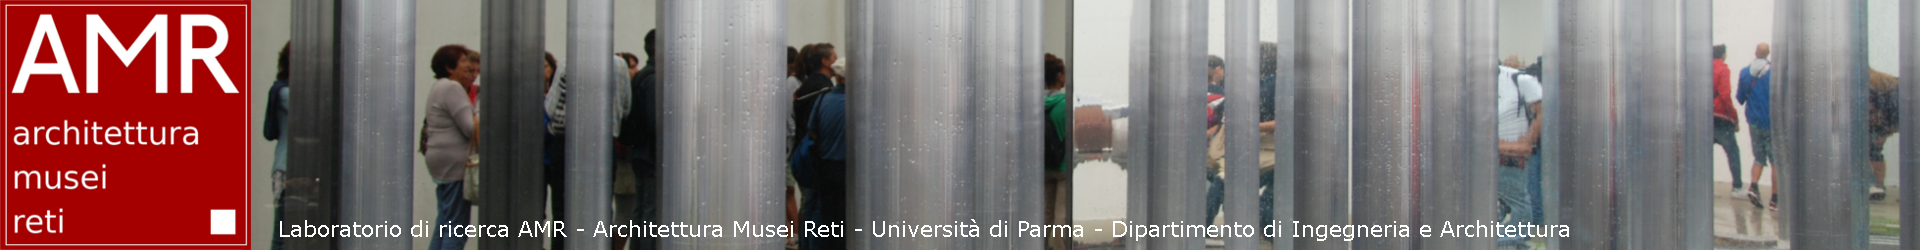 Giornata di studi “Esposizione & Divulgazione multimediale” a Parma.